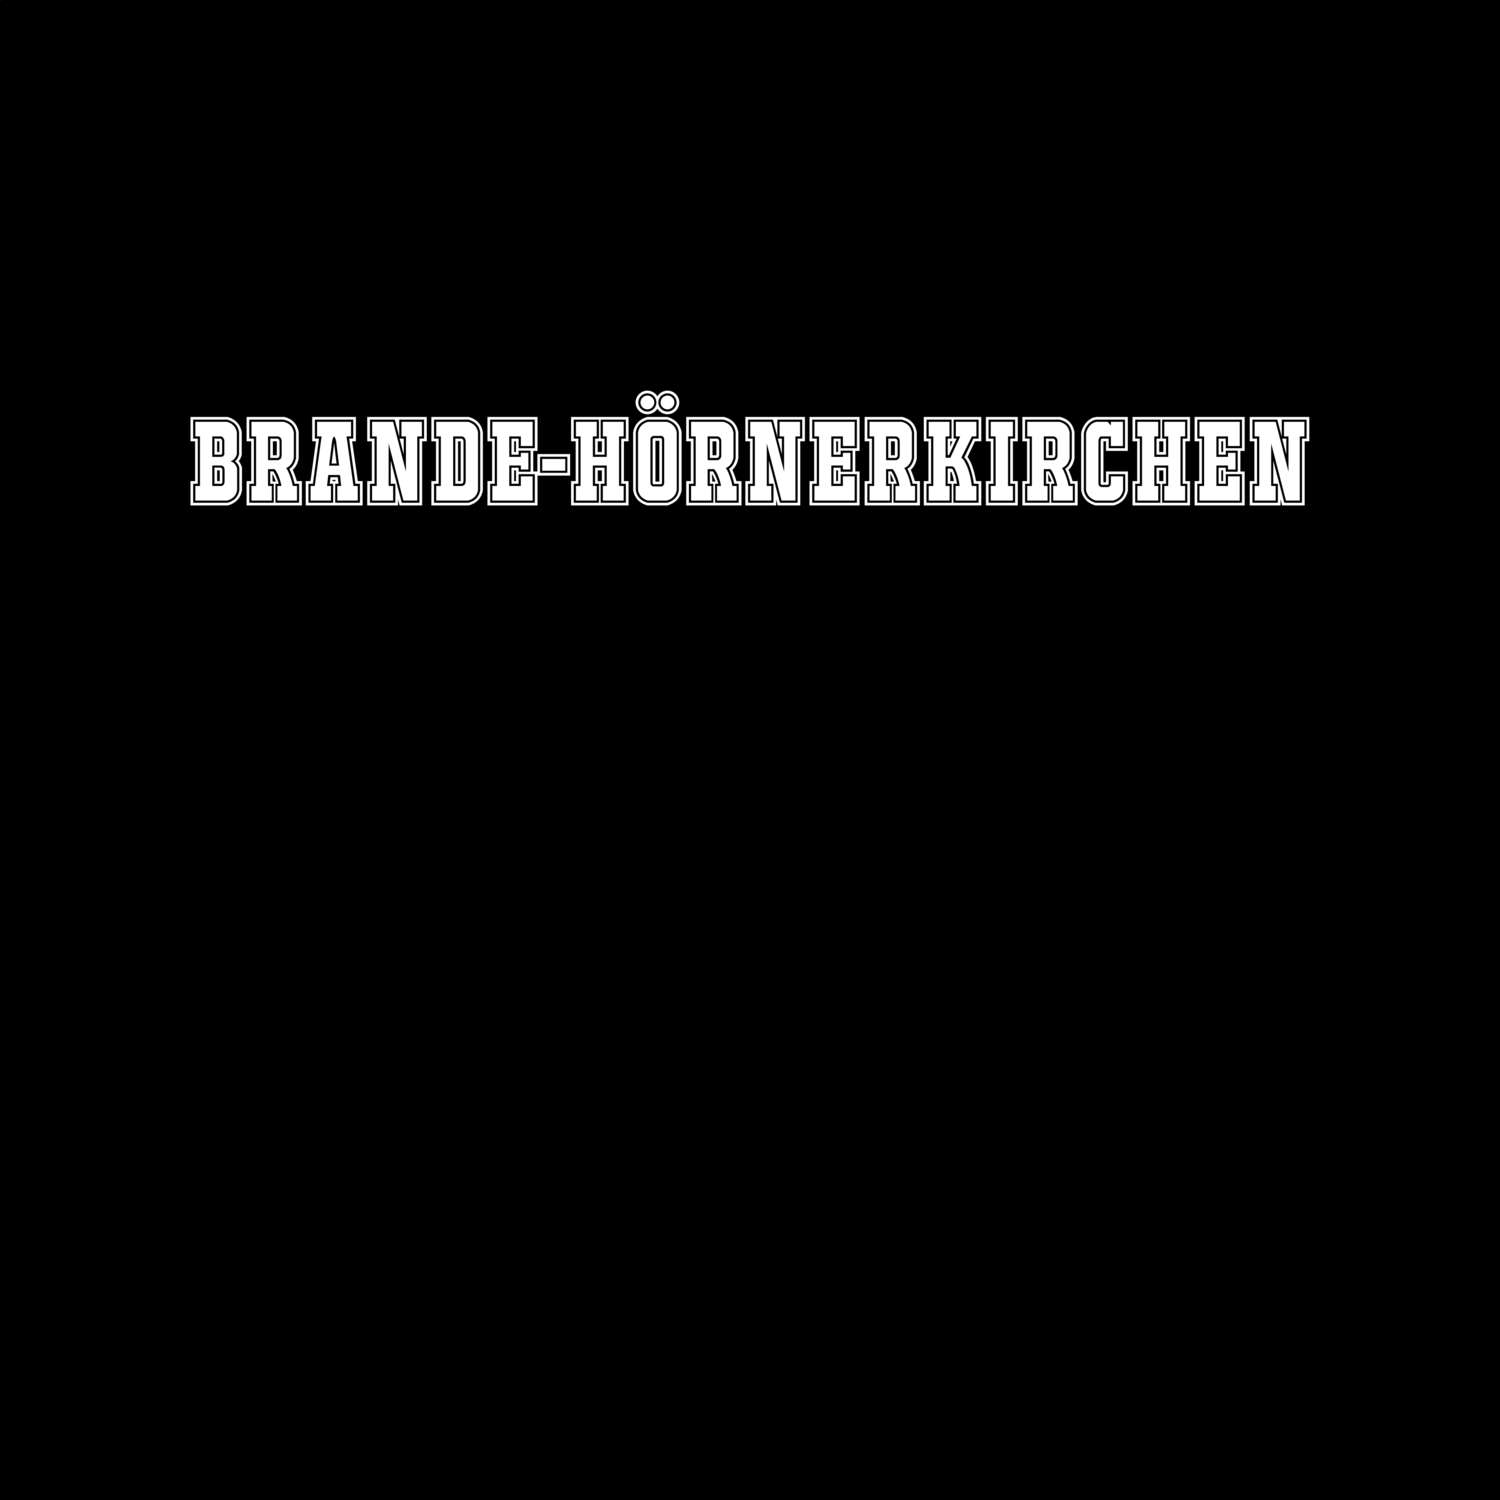 Brande-Hörnerkirchen T-Shirt »Classic«